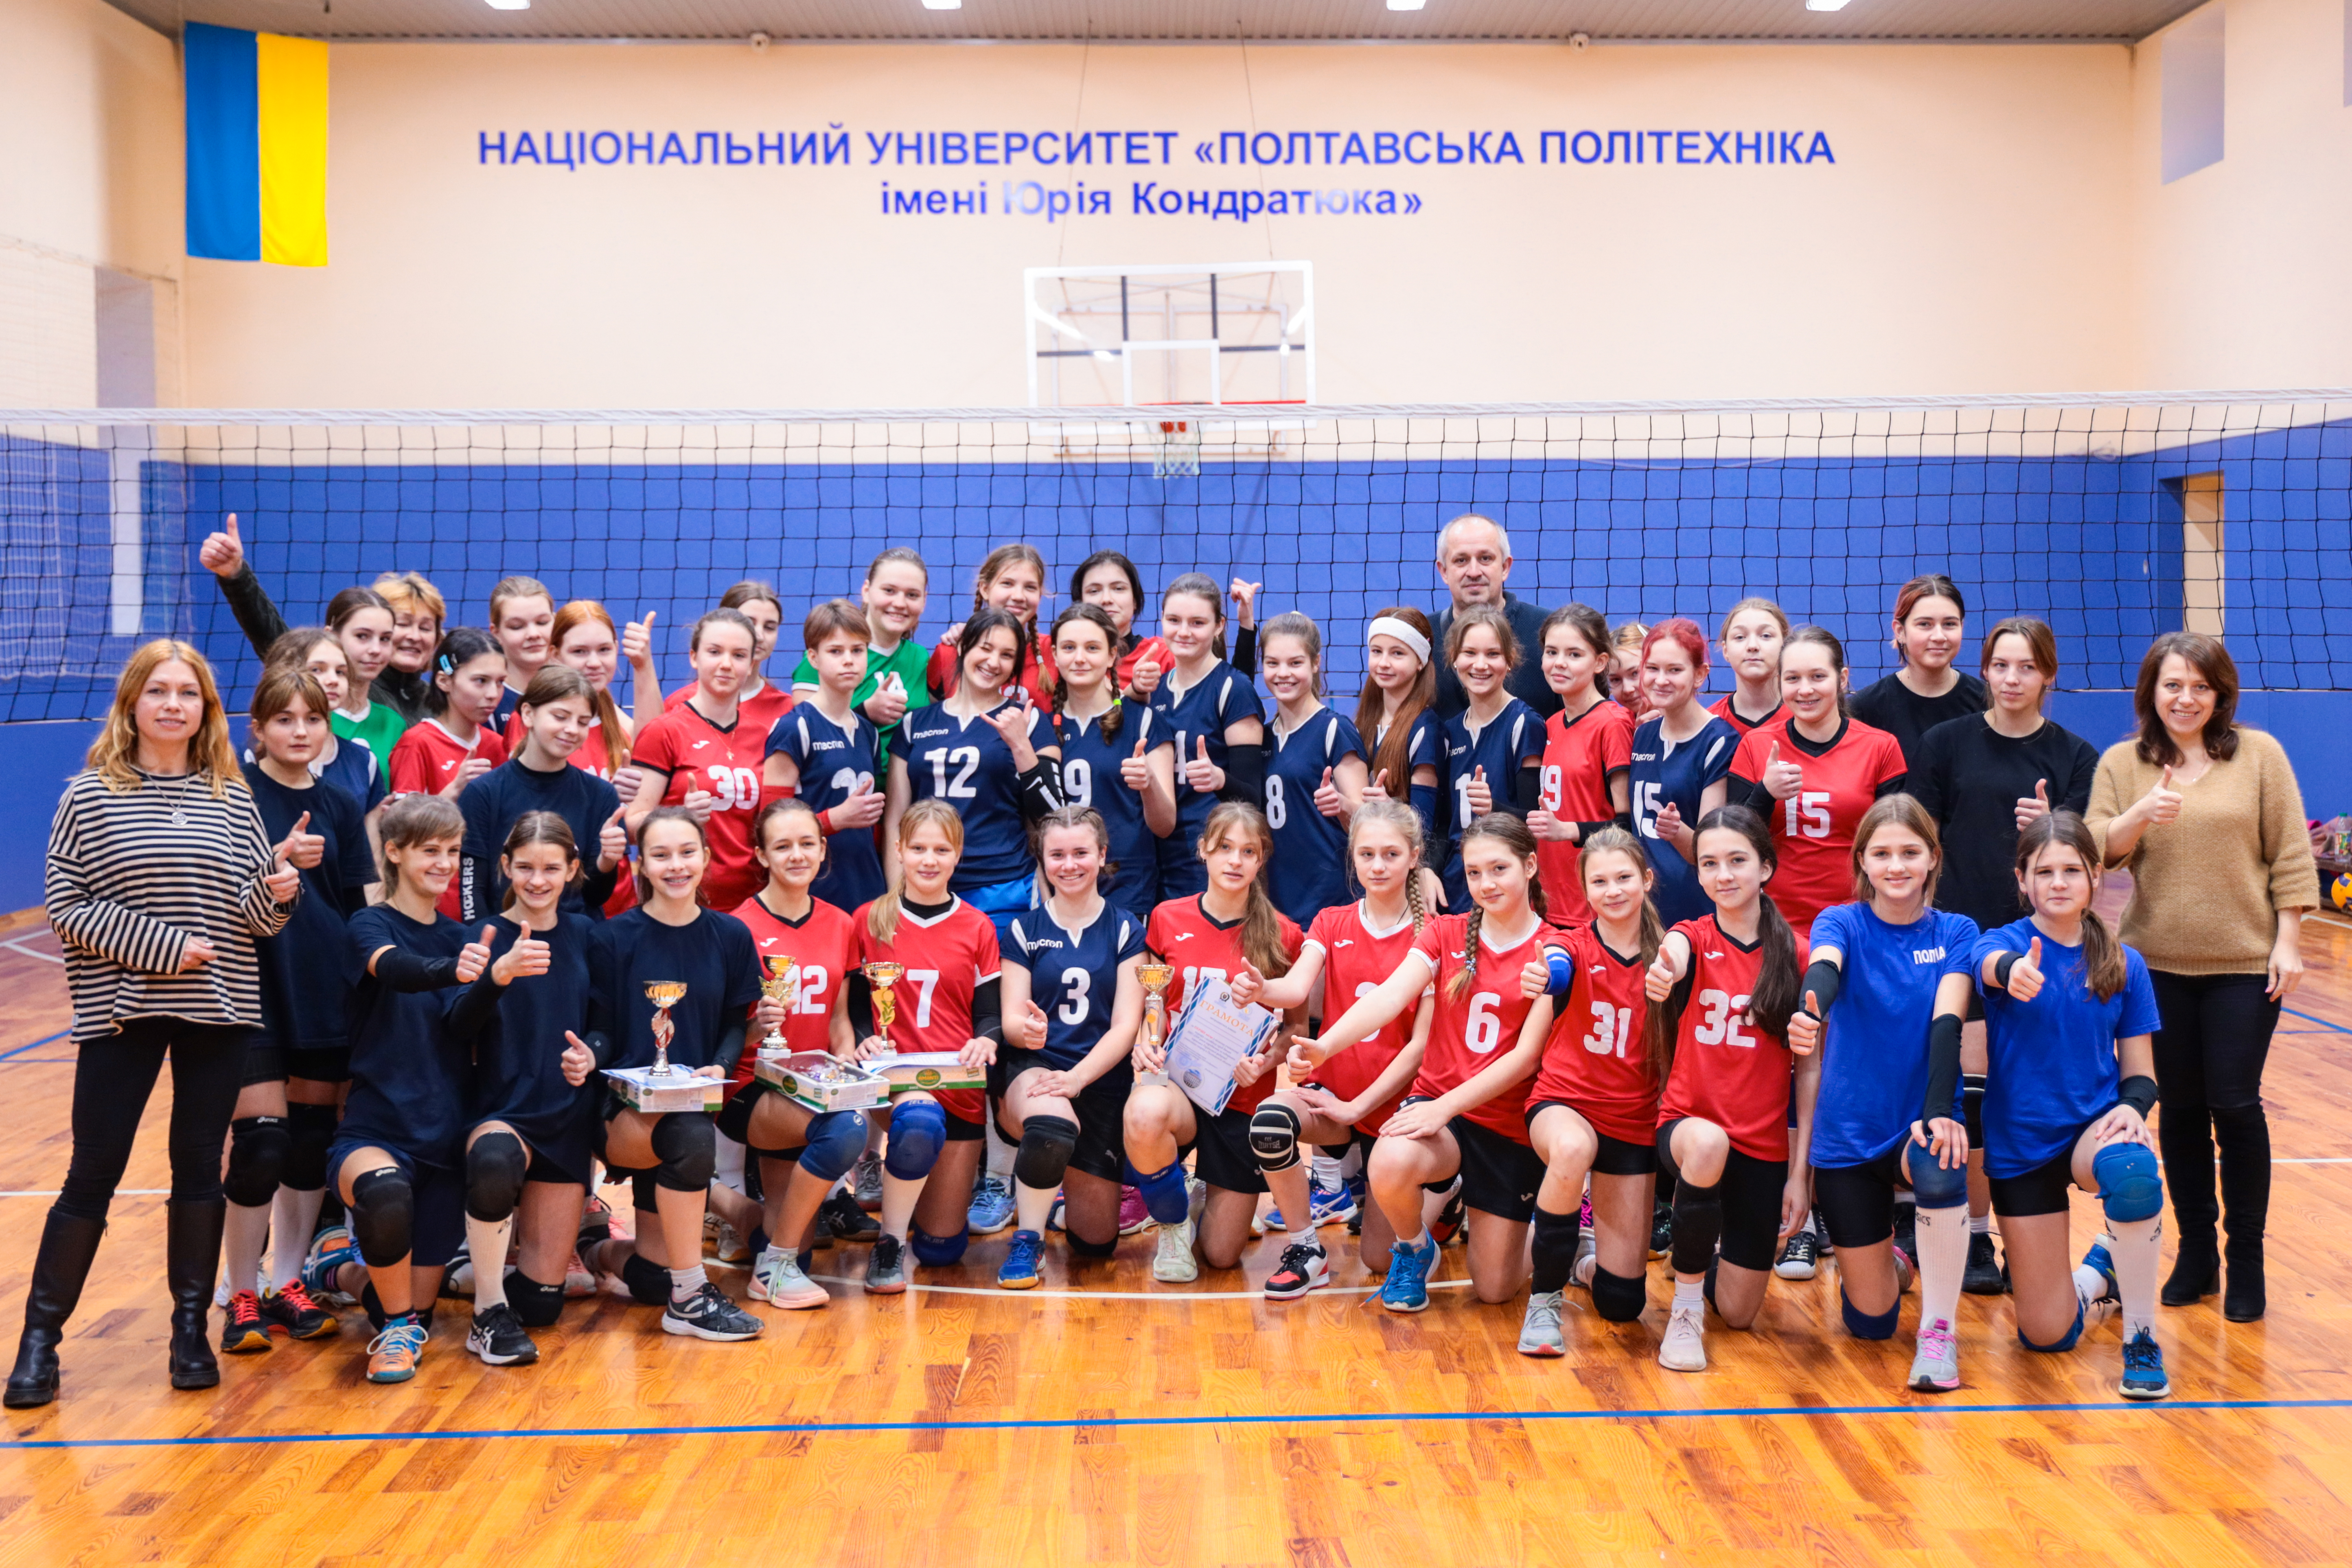 У політехніці відбувся міський учнівський турнір з волейболу серед дівчат